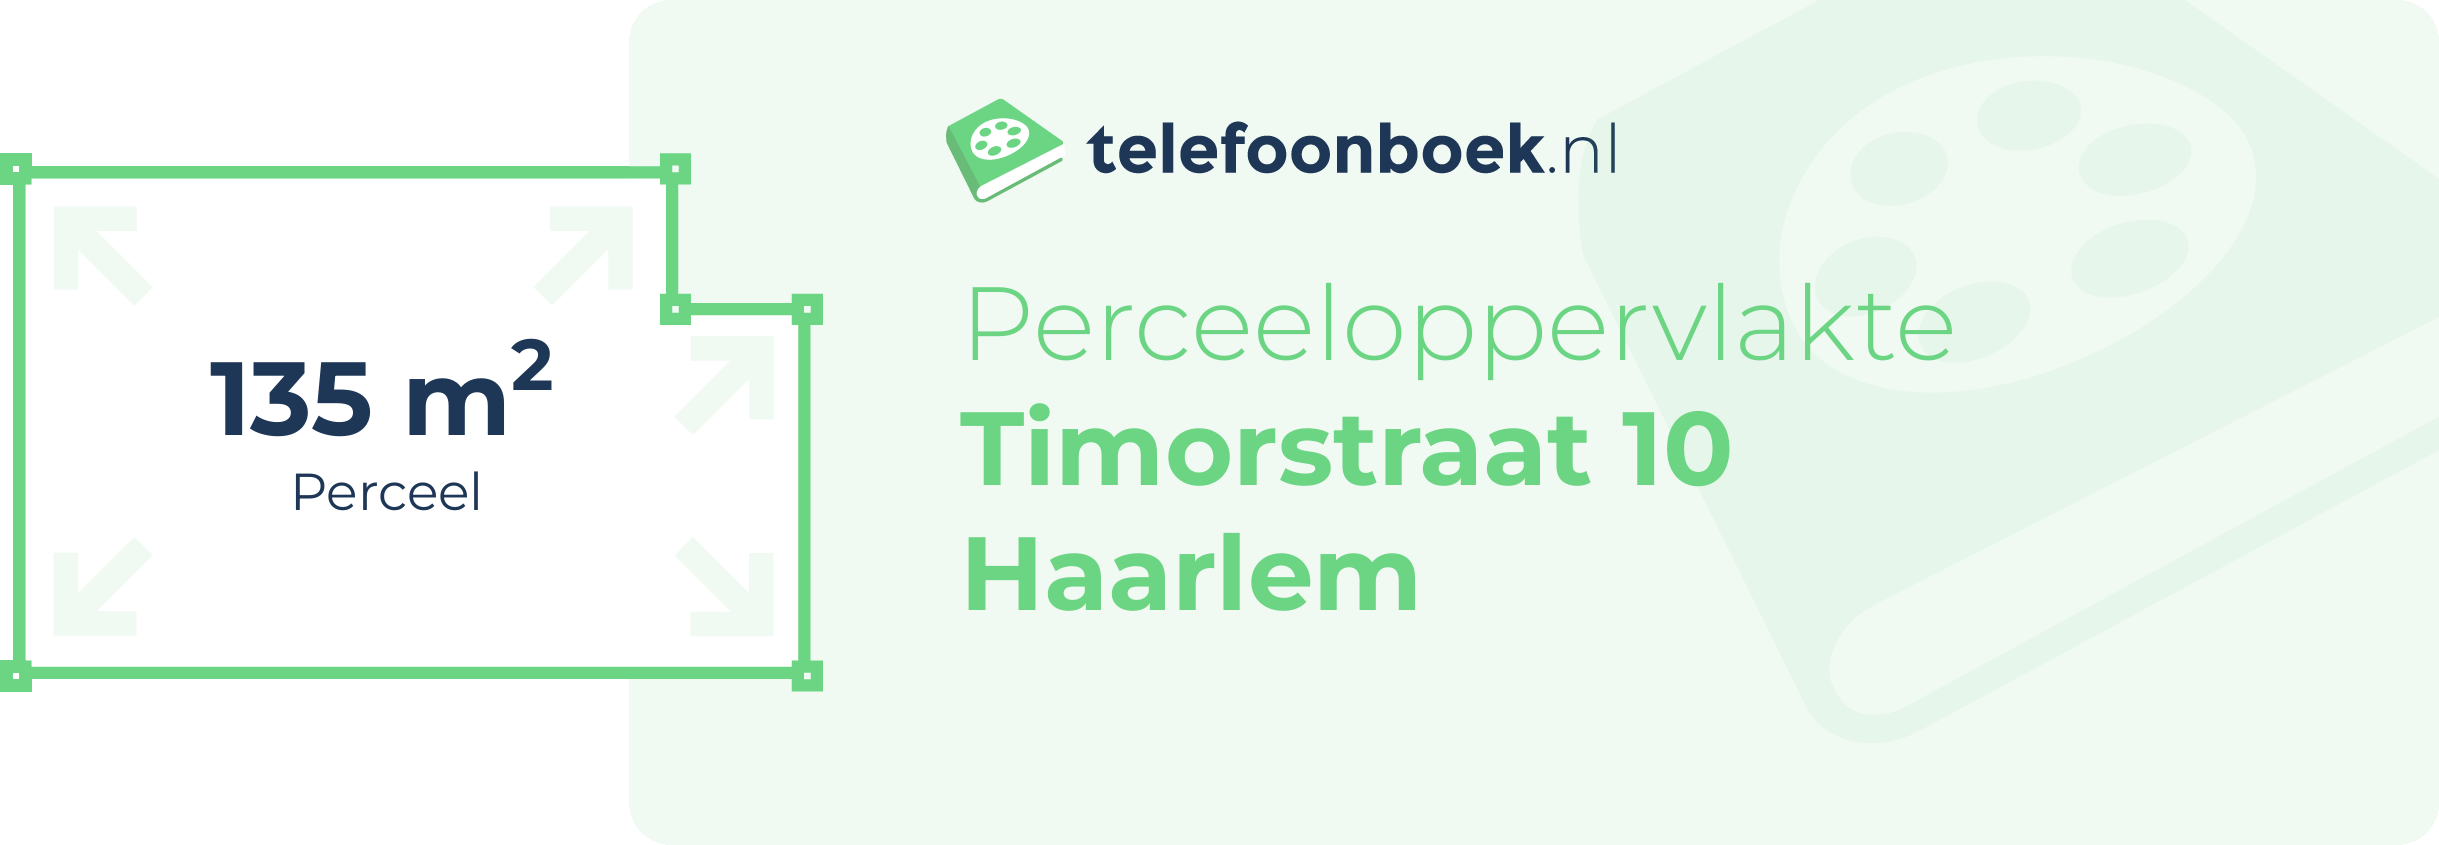 Perceeloppervlakte Timorstraat 10 Haarlem